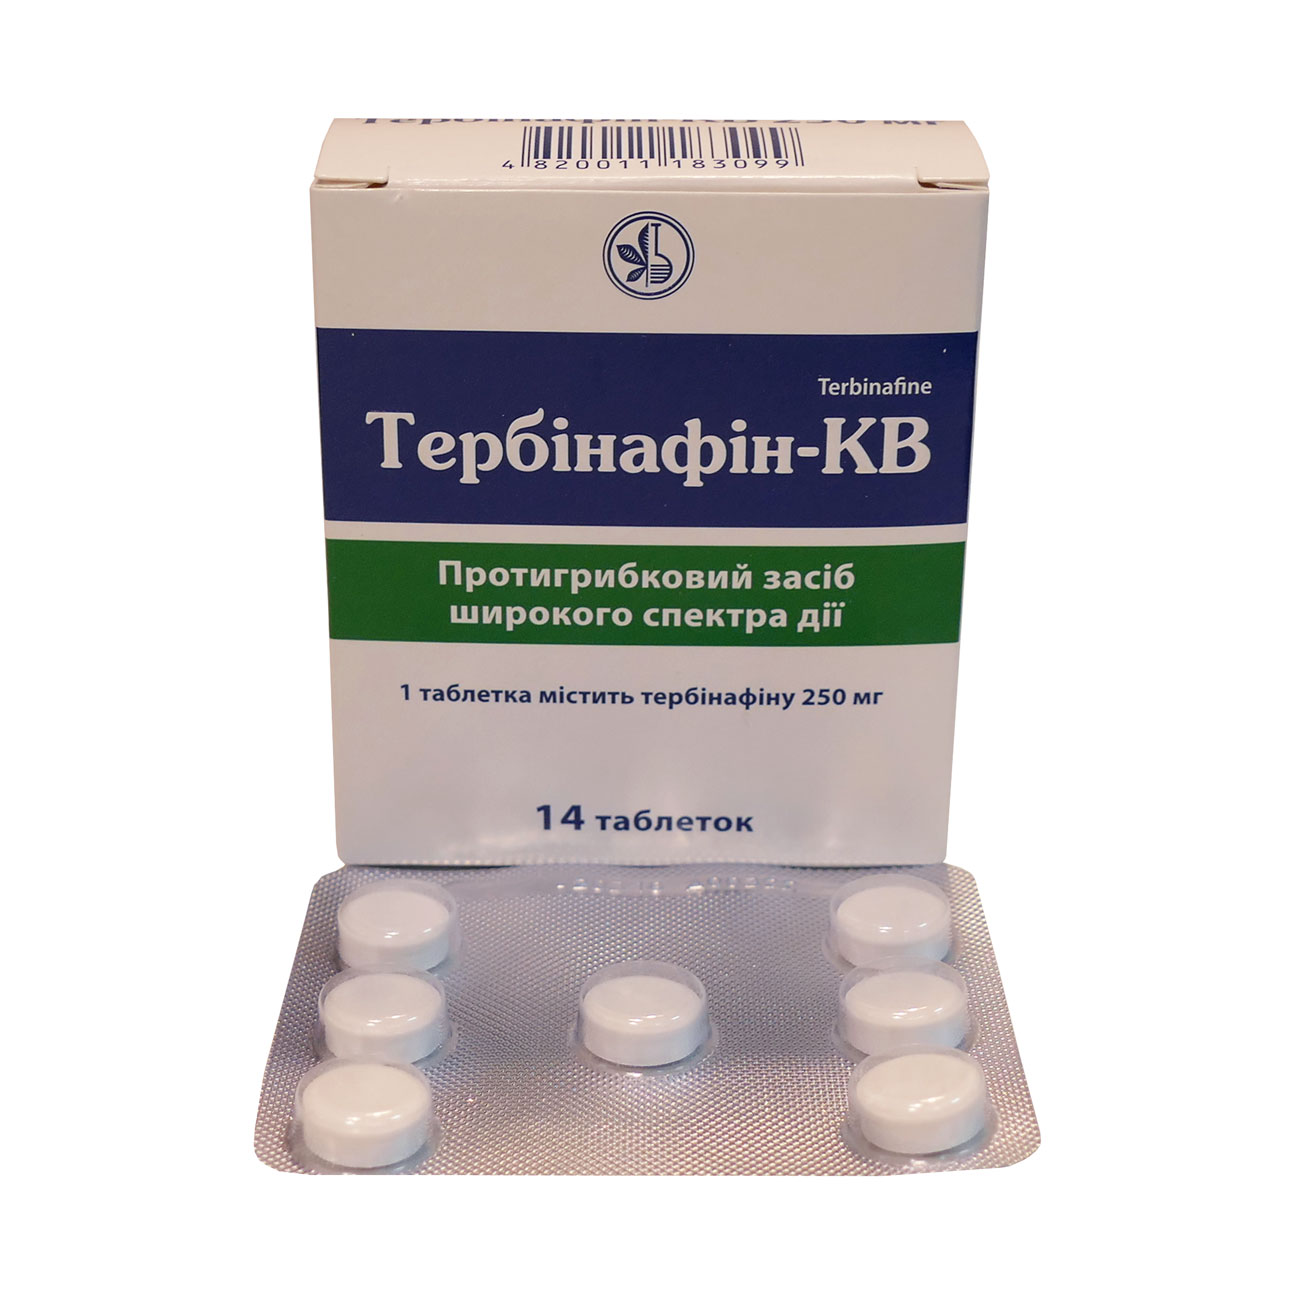 Тербинафин - мазь, крем и таблетки: инструкция, цена и аналоги препарата